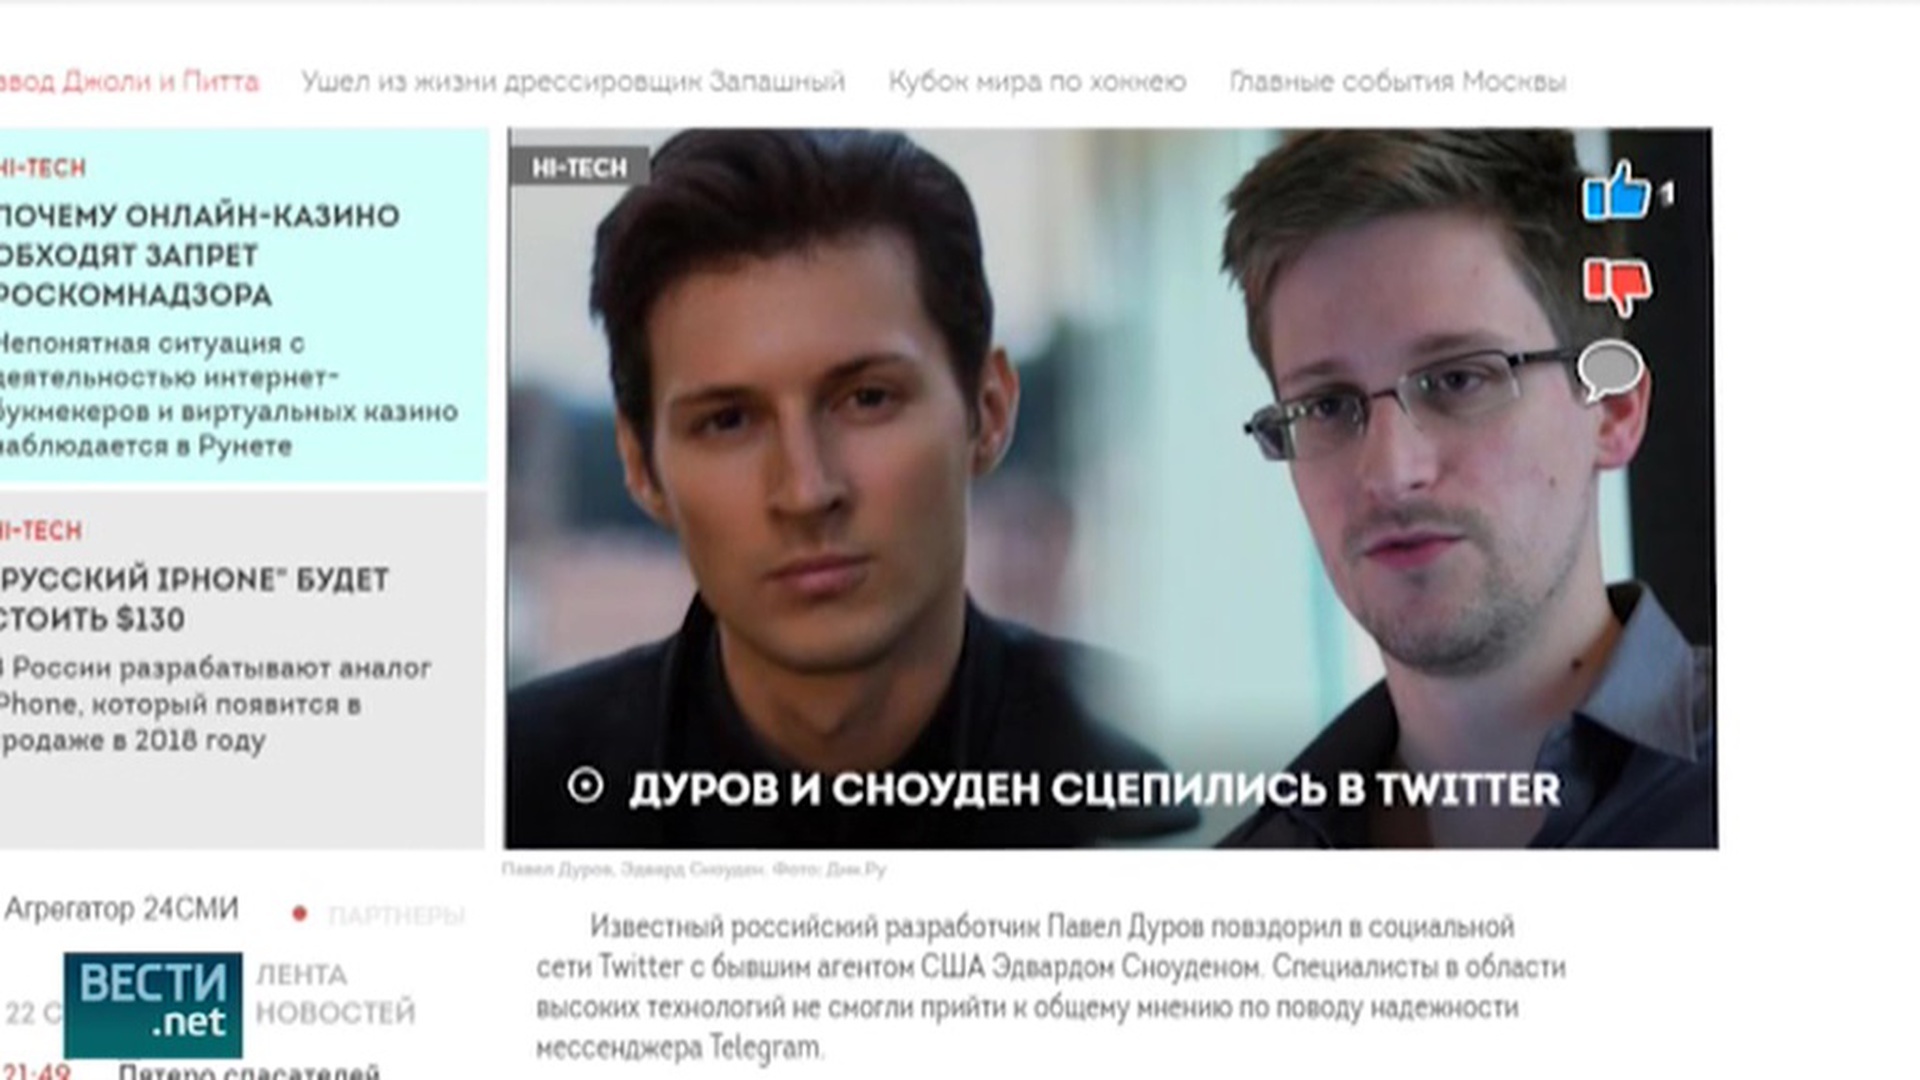 Сноуден vs Павел Дуров